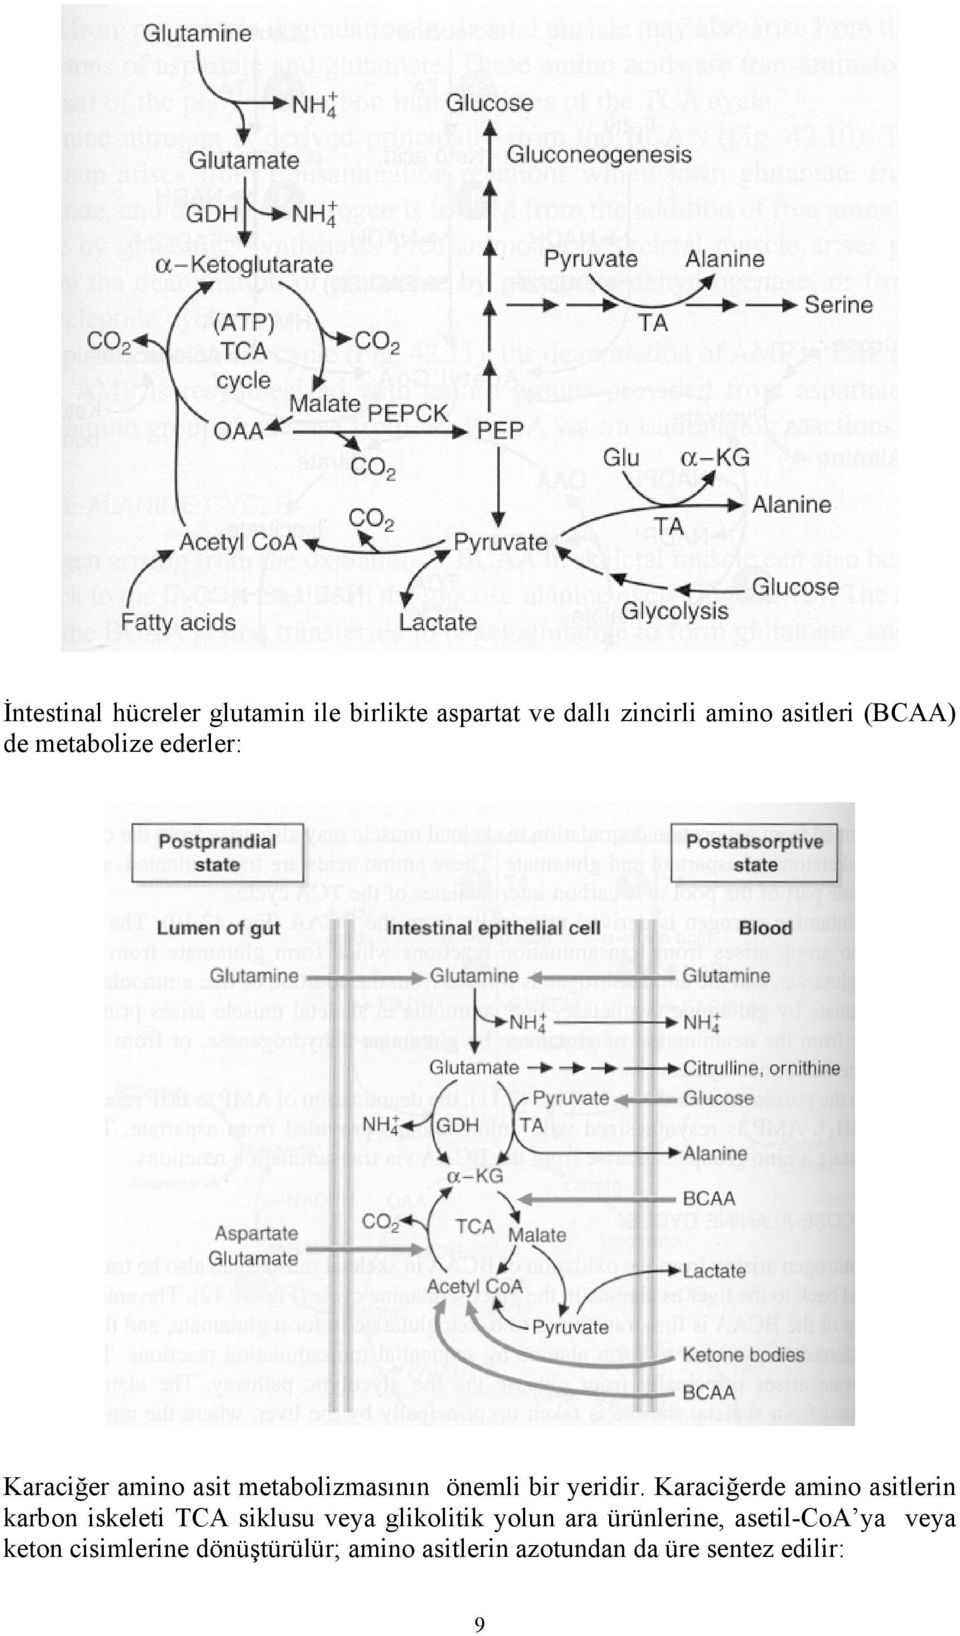 Karaciğerde amino asitlerin karbon iskeleti TCA siklusu veya glikolitik yolun ara